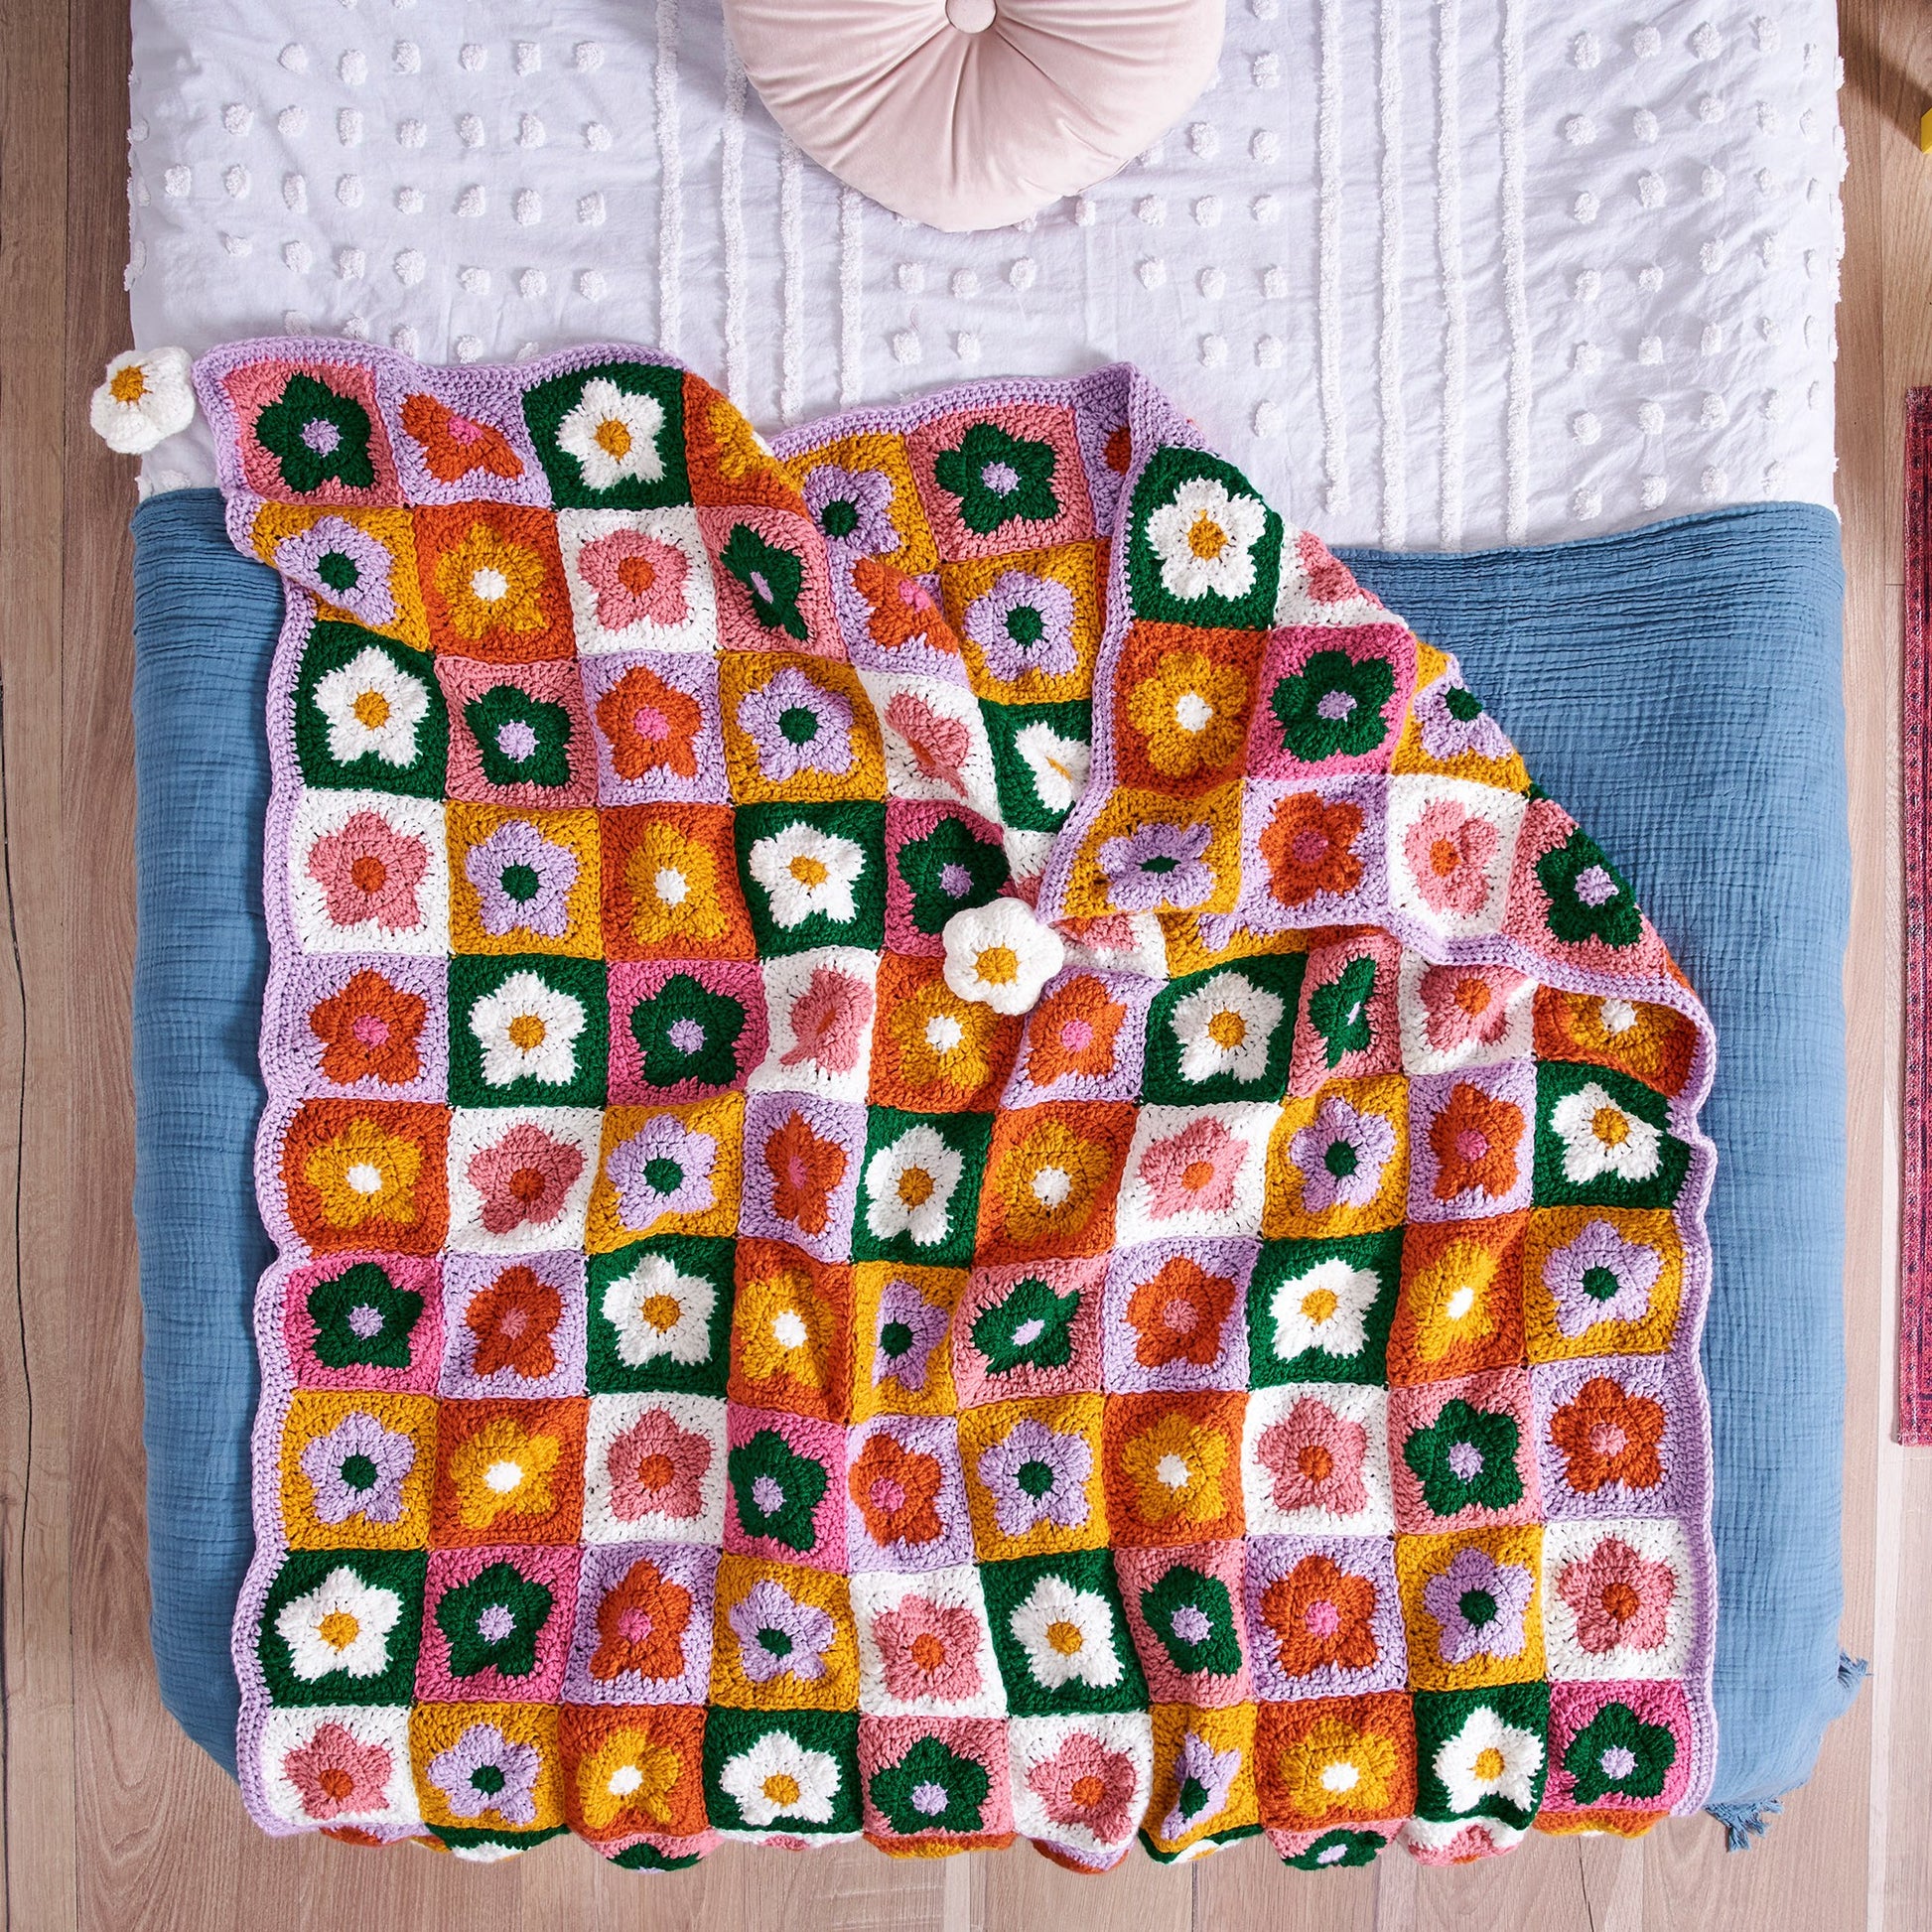 Free Red Heart Field of Daisies Crochet Blanket Pattern